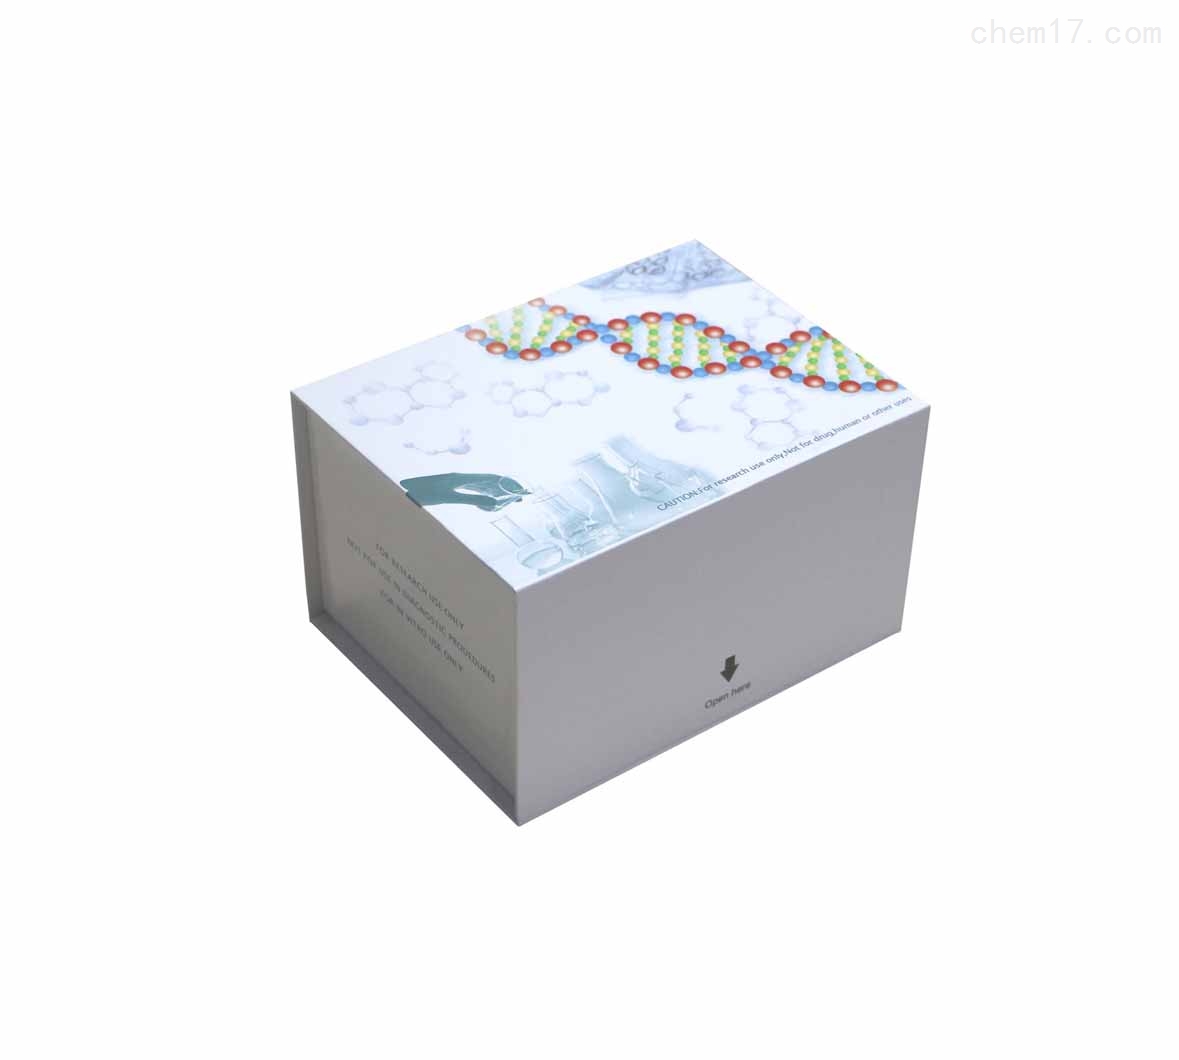 人乳铁传递蛋白/乳铁蛋白(LF/LTF)ELISA试剂盒免费待测